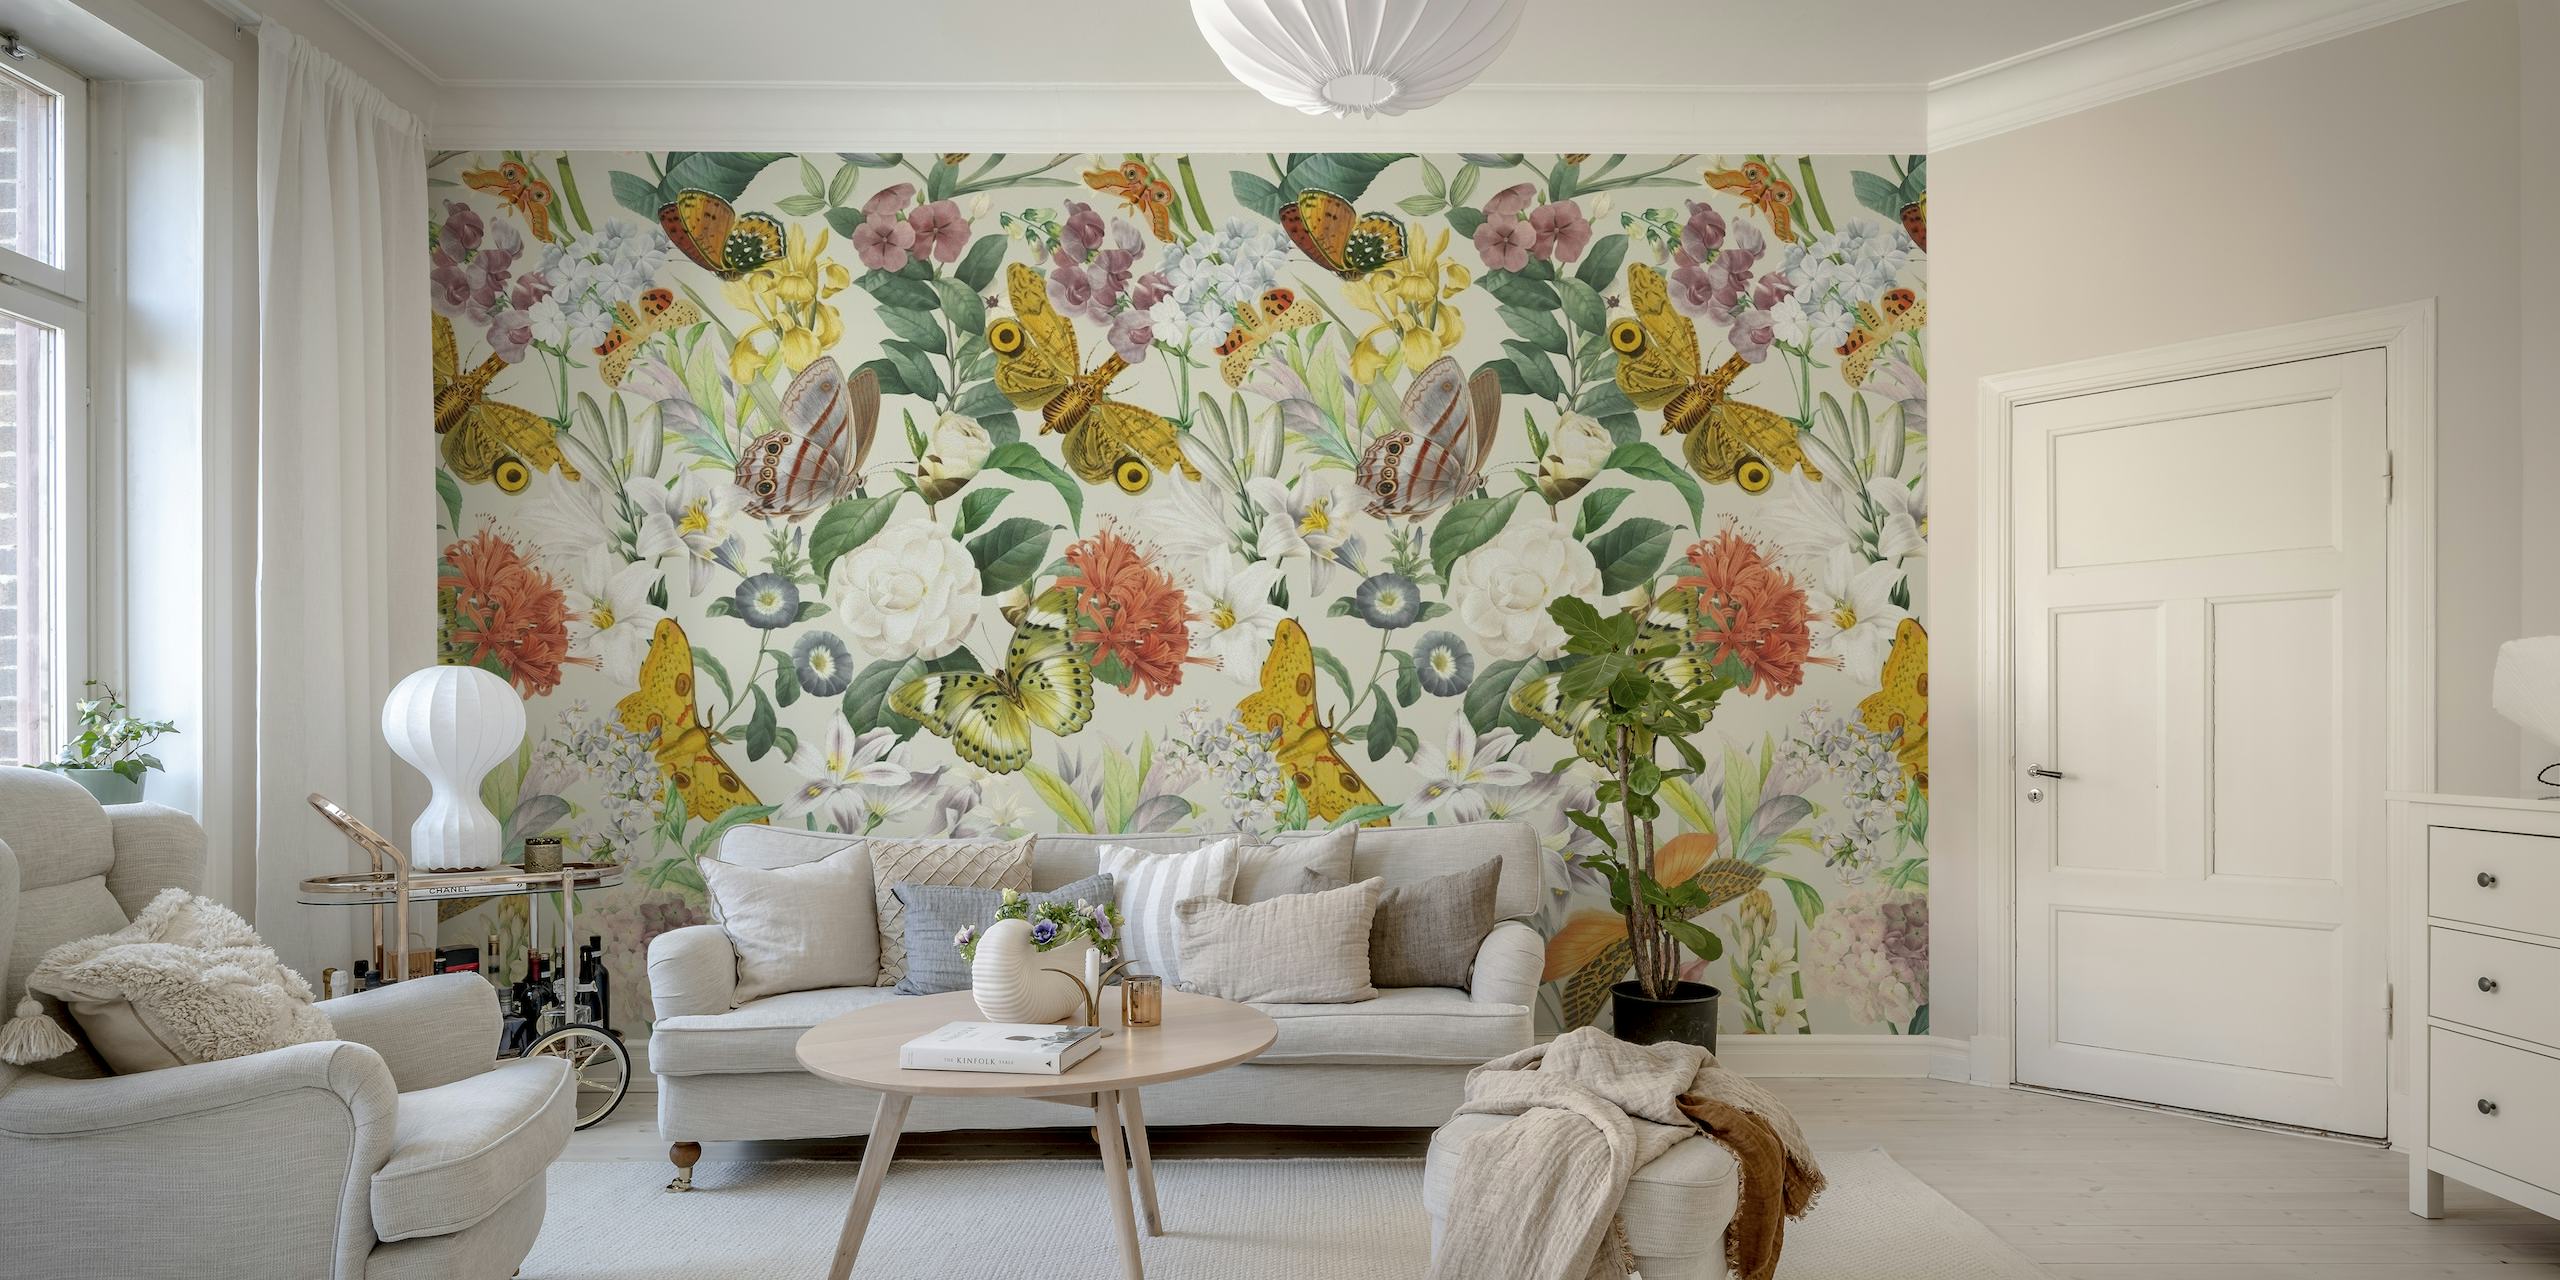 Seinämaalaus, jossa on kaunis kuvioperhosia, perhosia ja kukkaelementtejä pehmeissä pastelliväreissä.